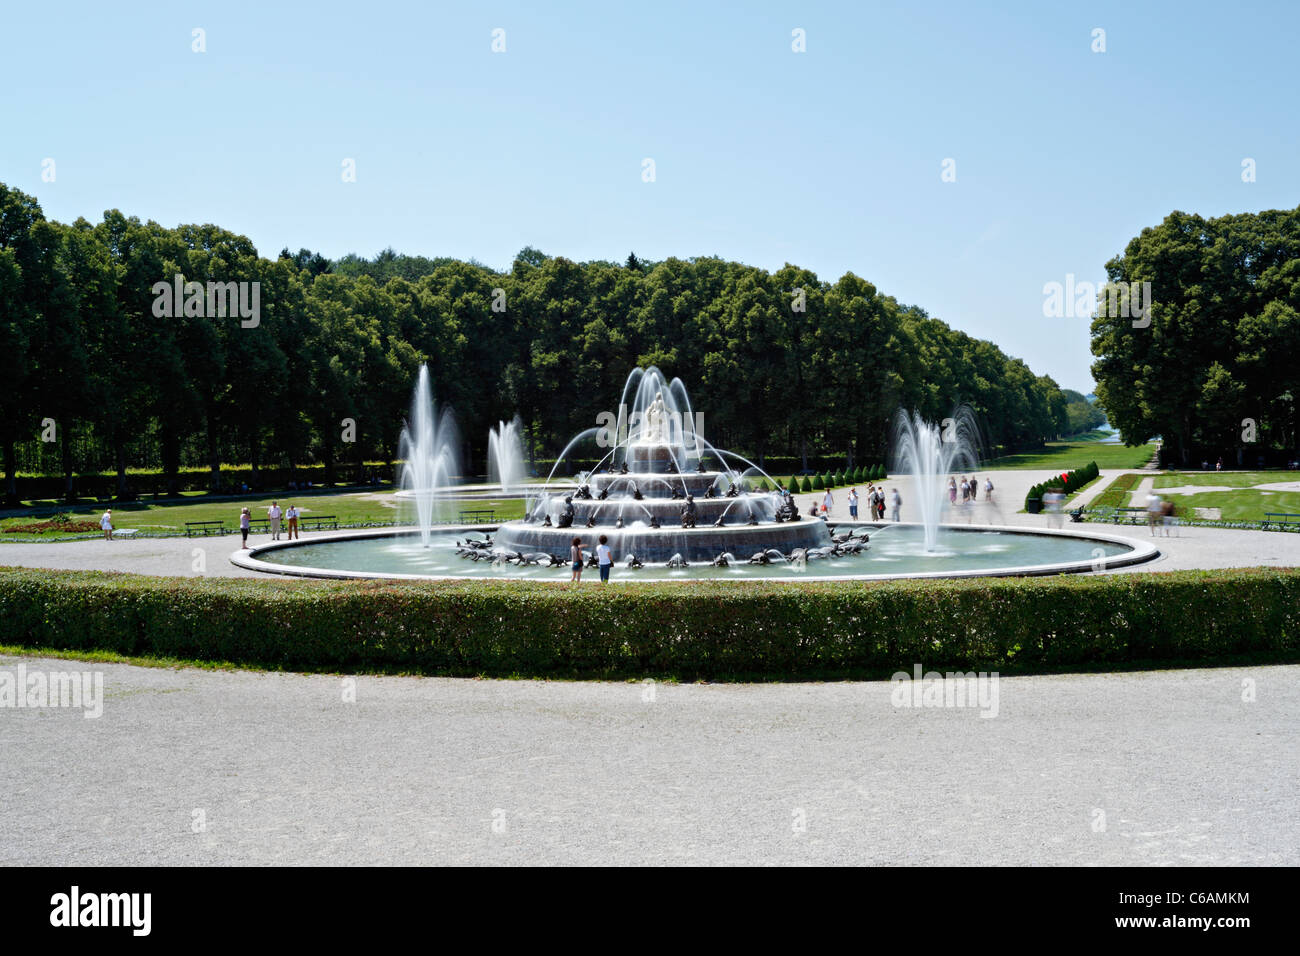 Latona Fountain, Herreninsel Upper Bavaria Germany Stock Photo